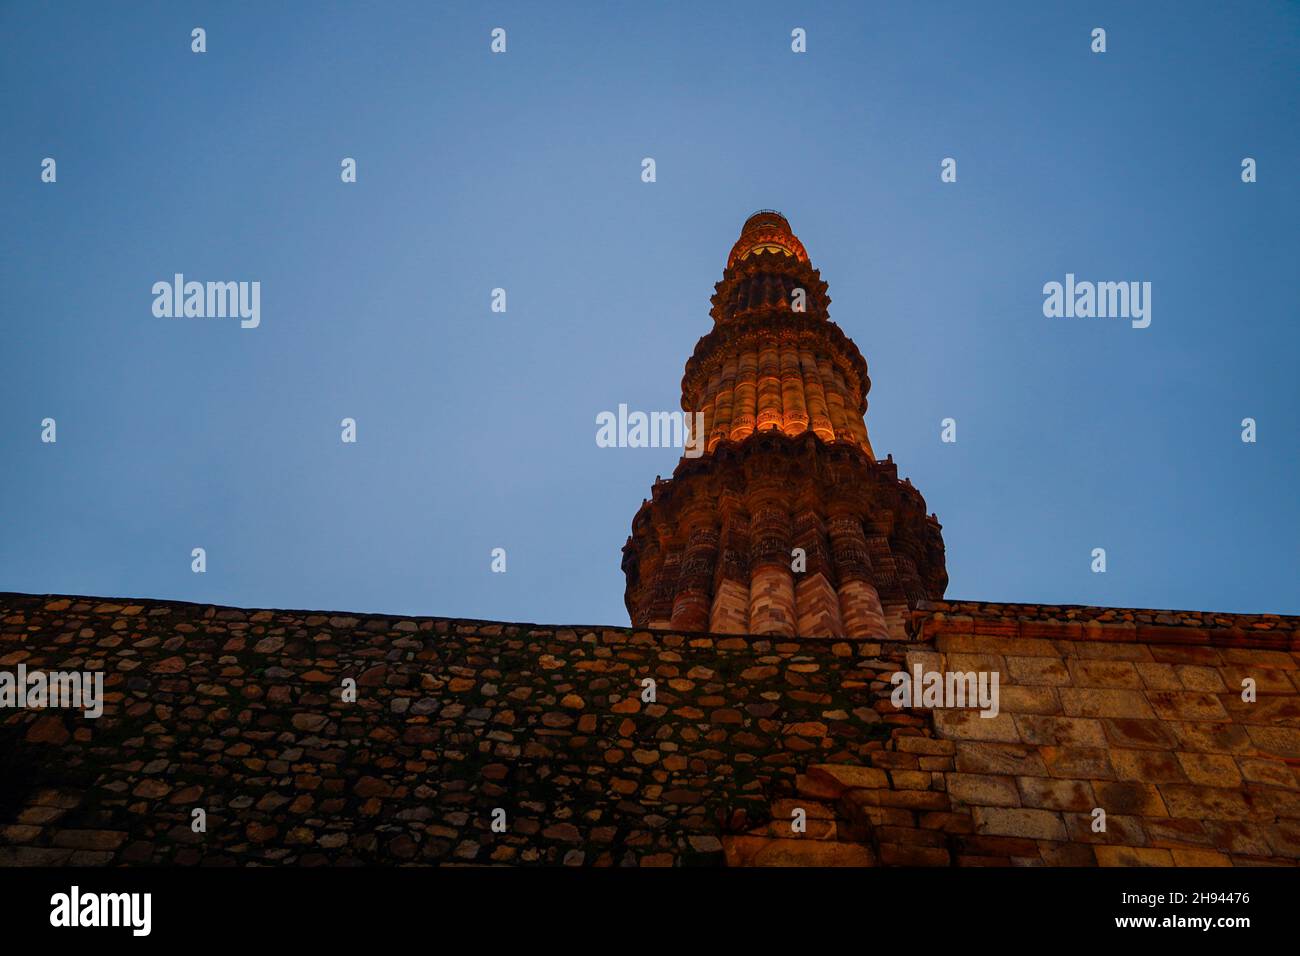 Vista nocturna de la imagen de Qutub Minar- Qutab Minar Road, Delhi Foto de stock